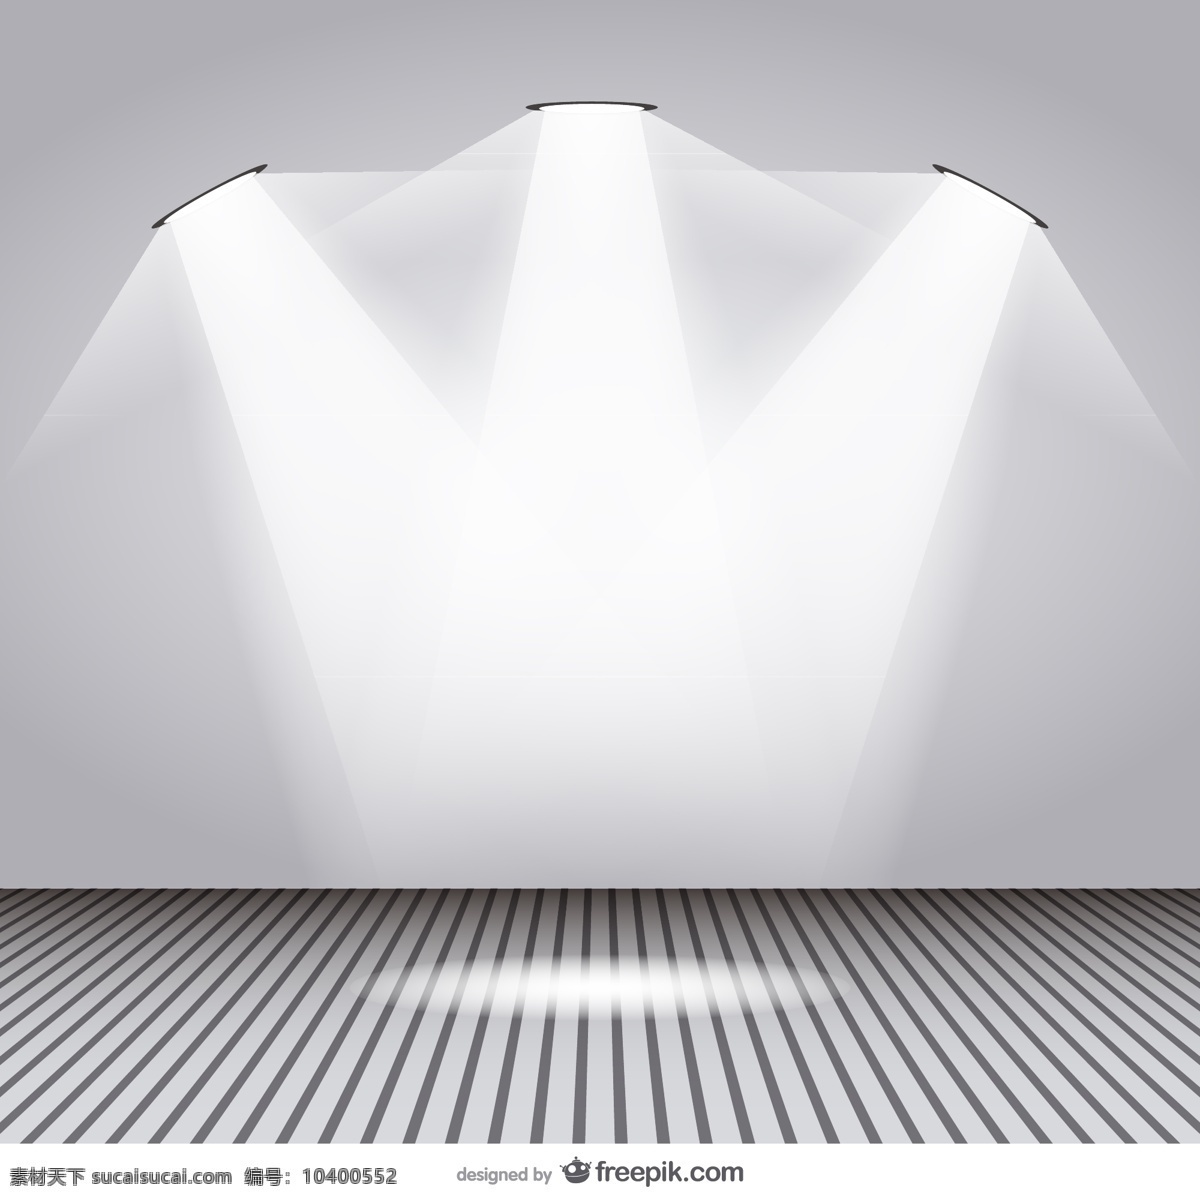 聚光灯室设计 背景 模型 光 模板 艺术墙纸 图形 布局 展示 平面设计 房间 灯 模拟 聚光灯 白色的背景 插图 白